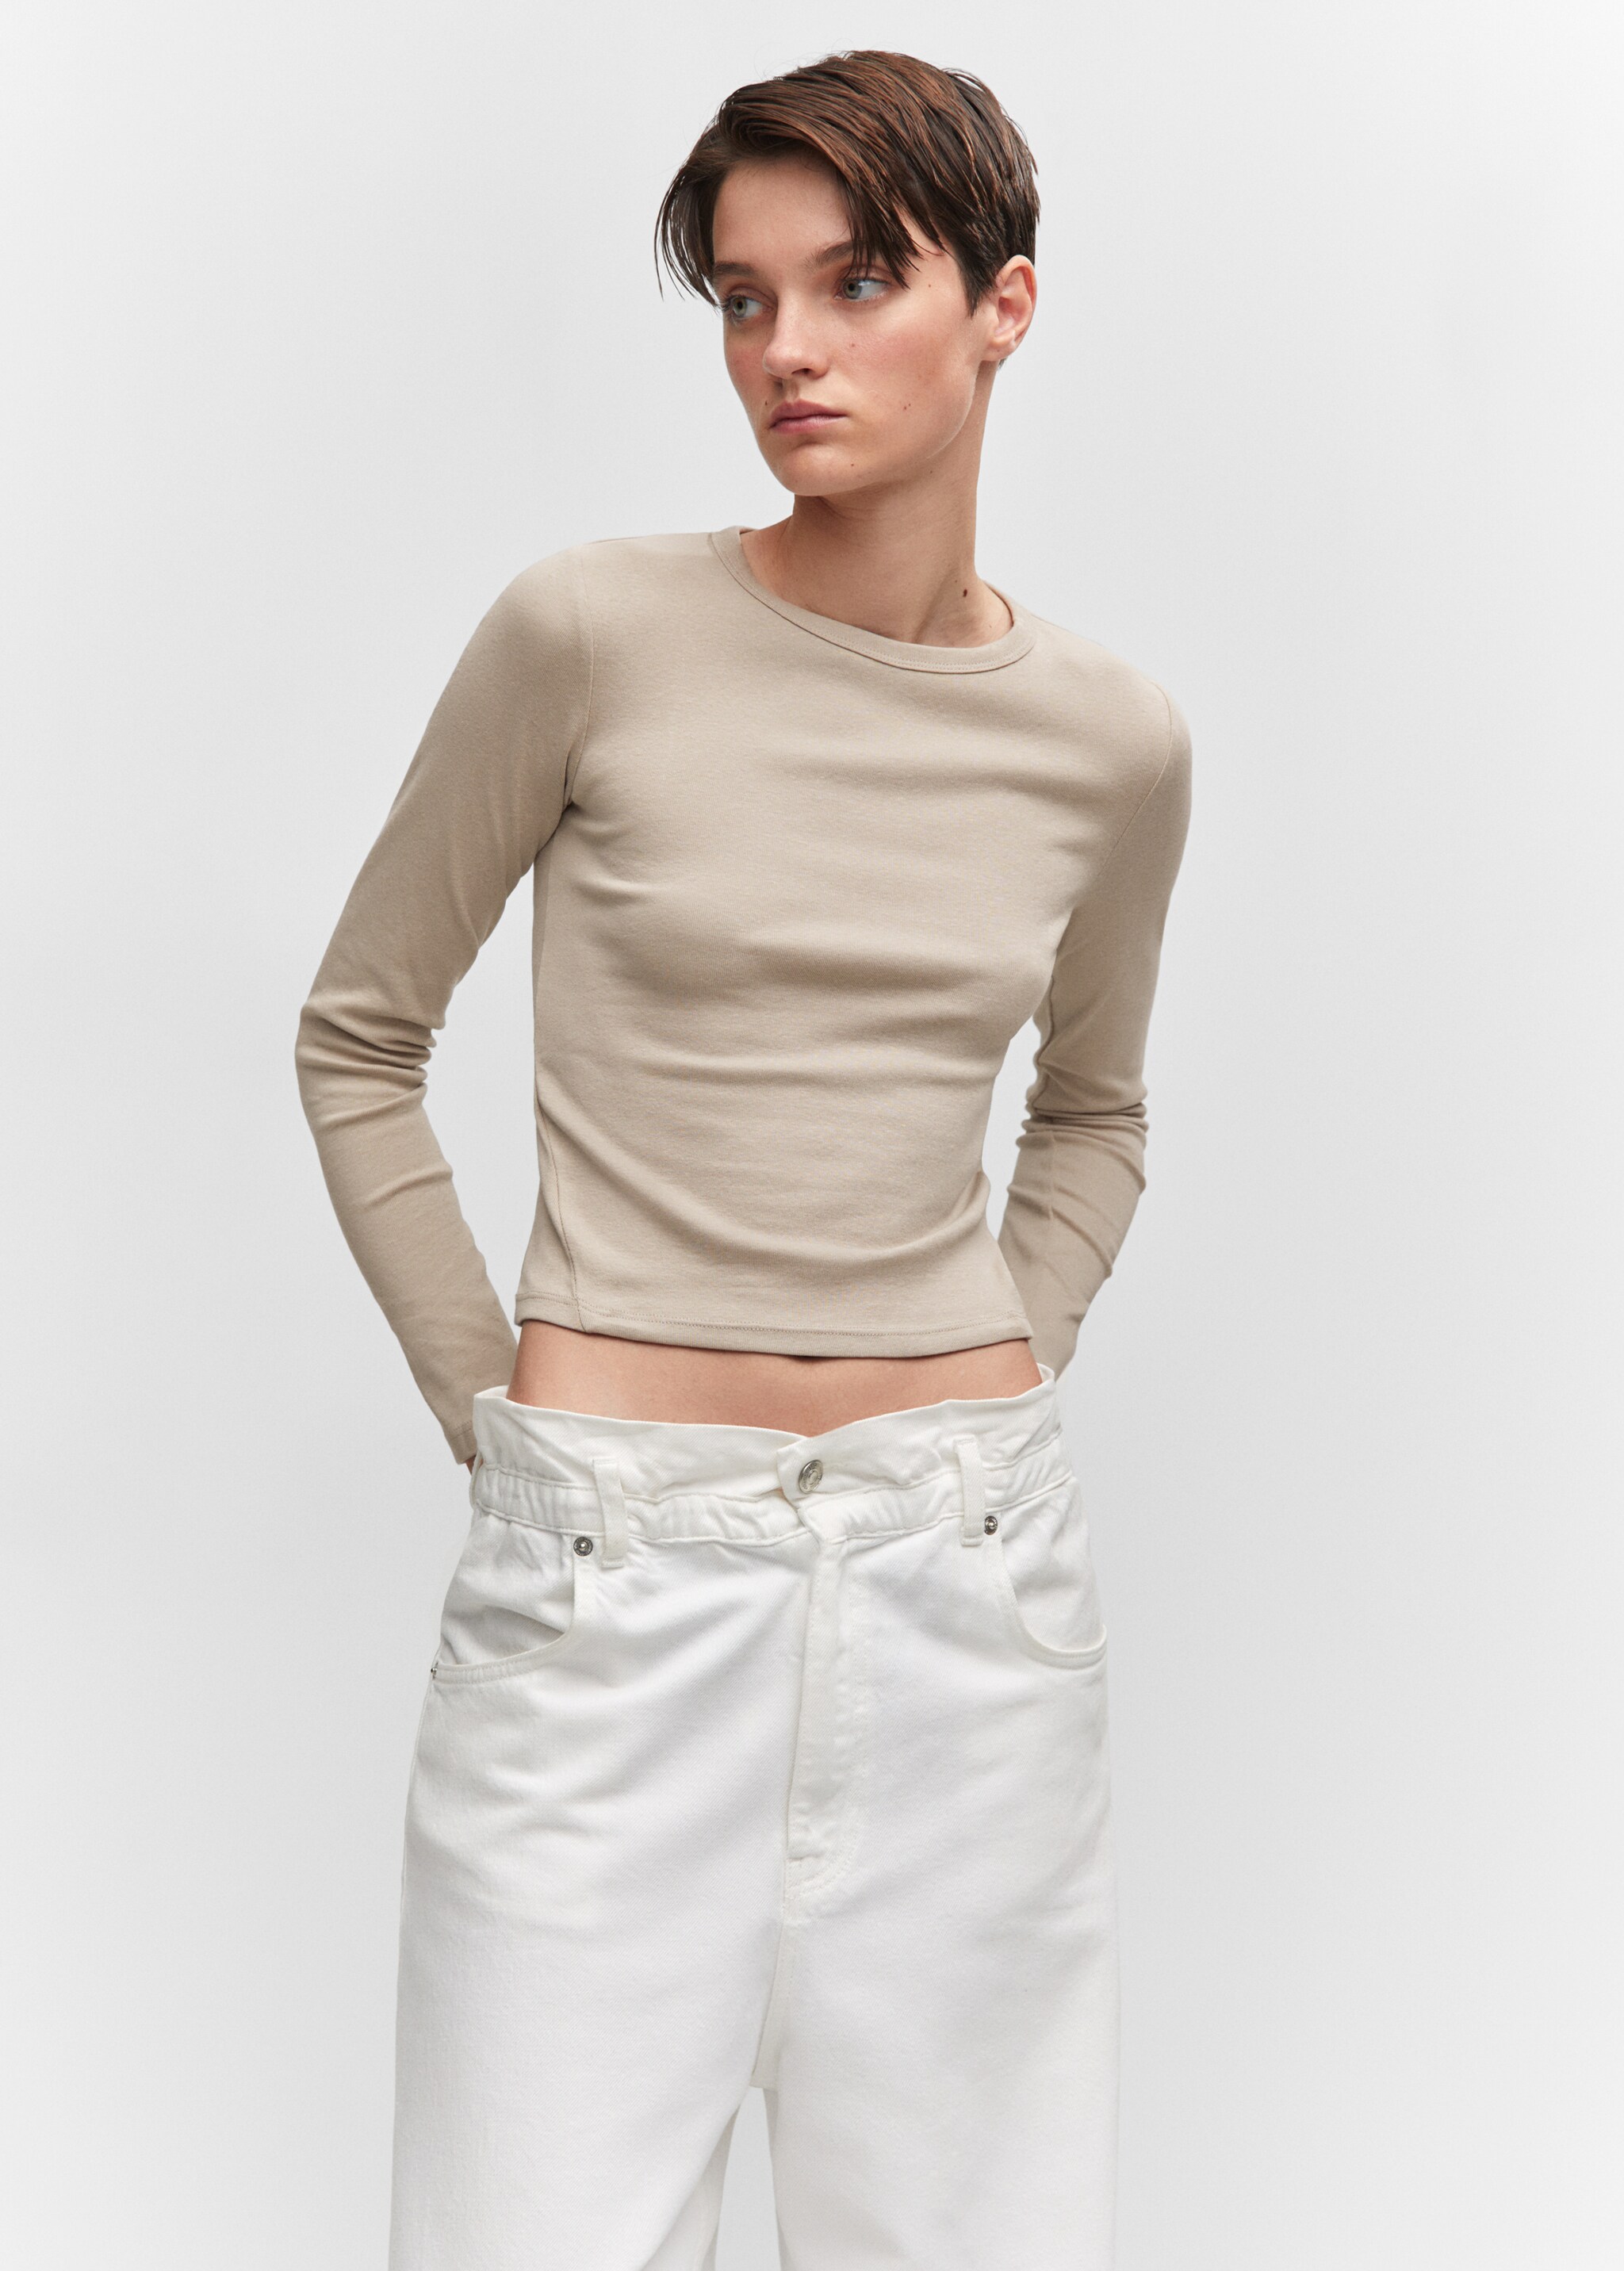 Camiseta algodón costuras - Plano medio